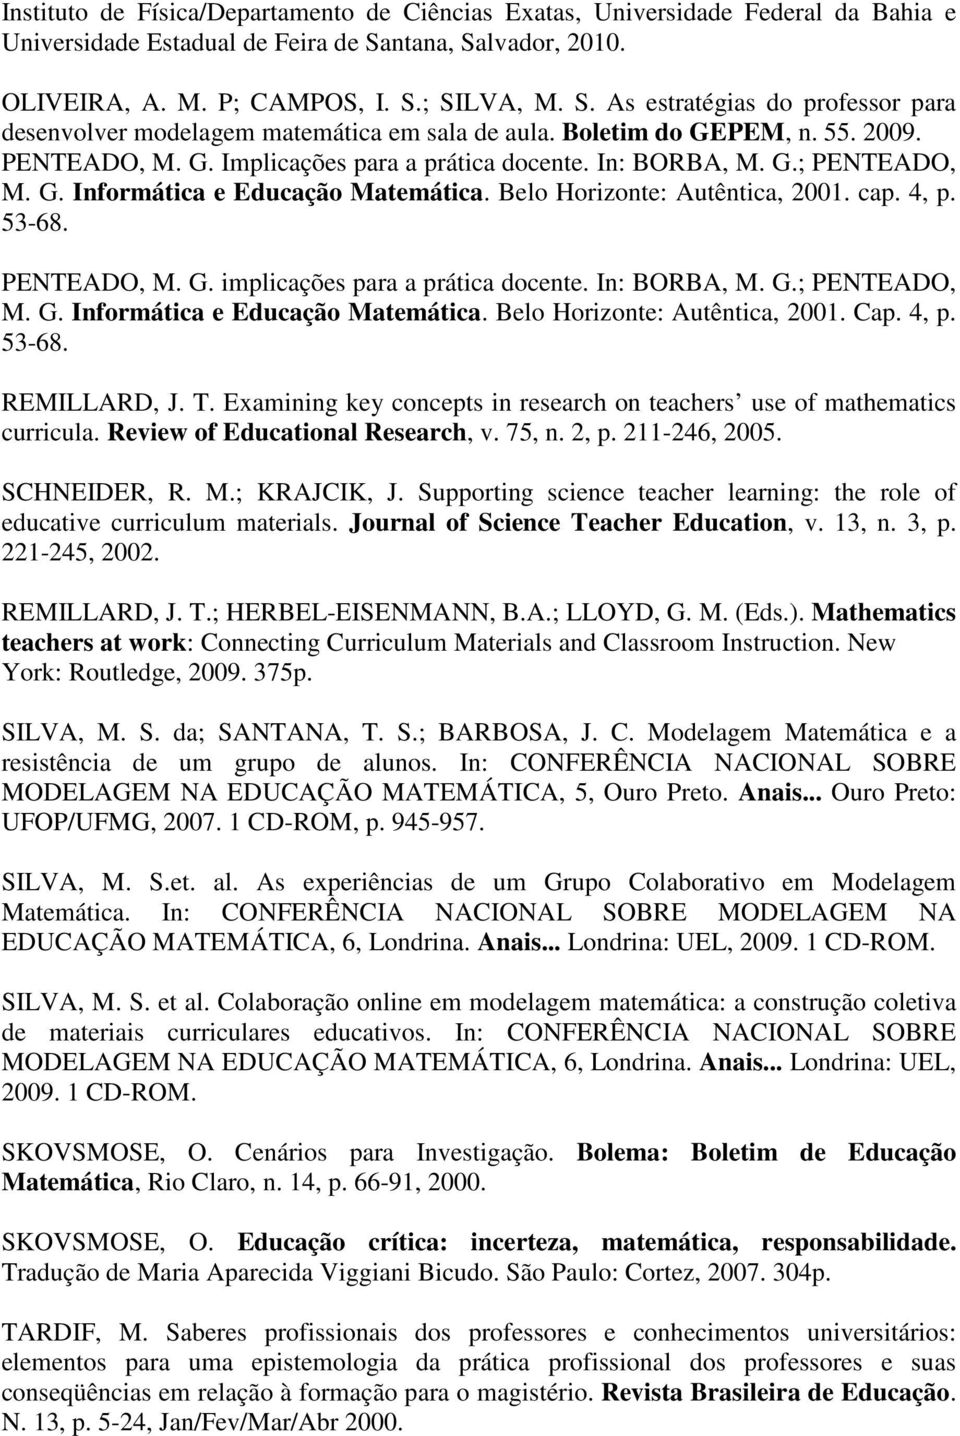 PEM, n. 55. 2009. PENTEADO, M. G. Implicações para a prática docente. In: BORBA, M. G.; PENTEADO, M. G. Informática e Educação Matemática. Belo Horizonte: Autêntica, 2001. cap. 4, p. 53-68.